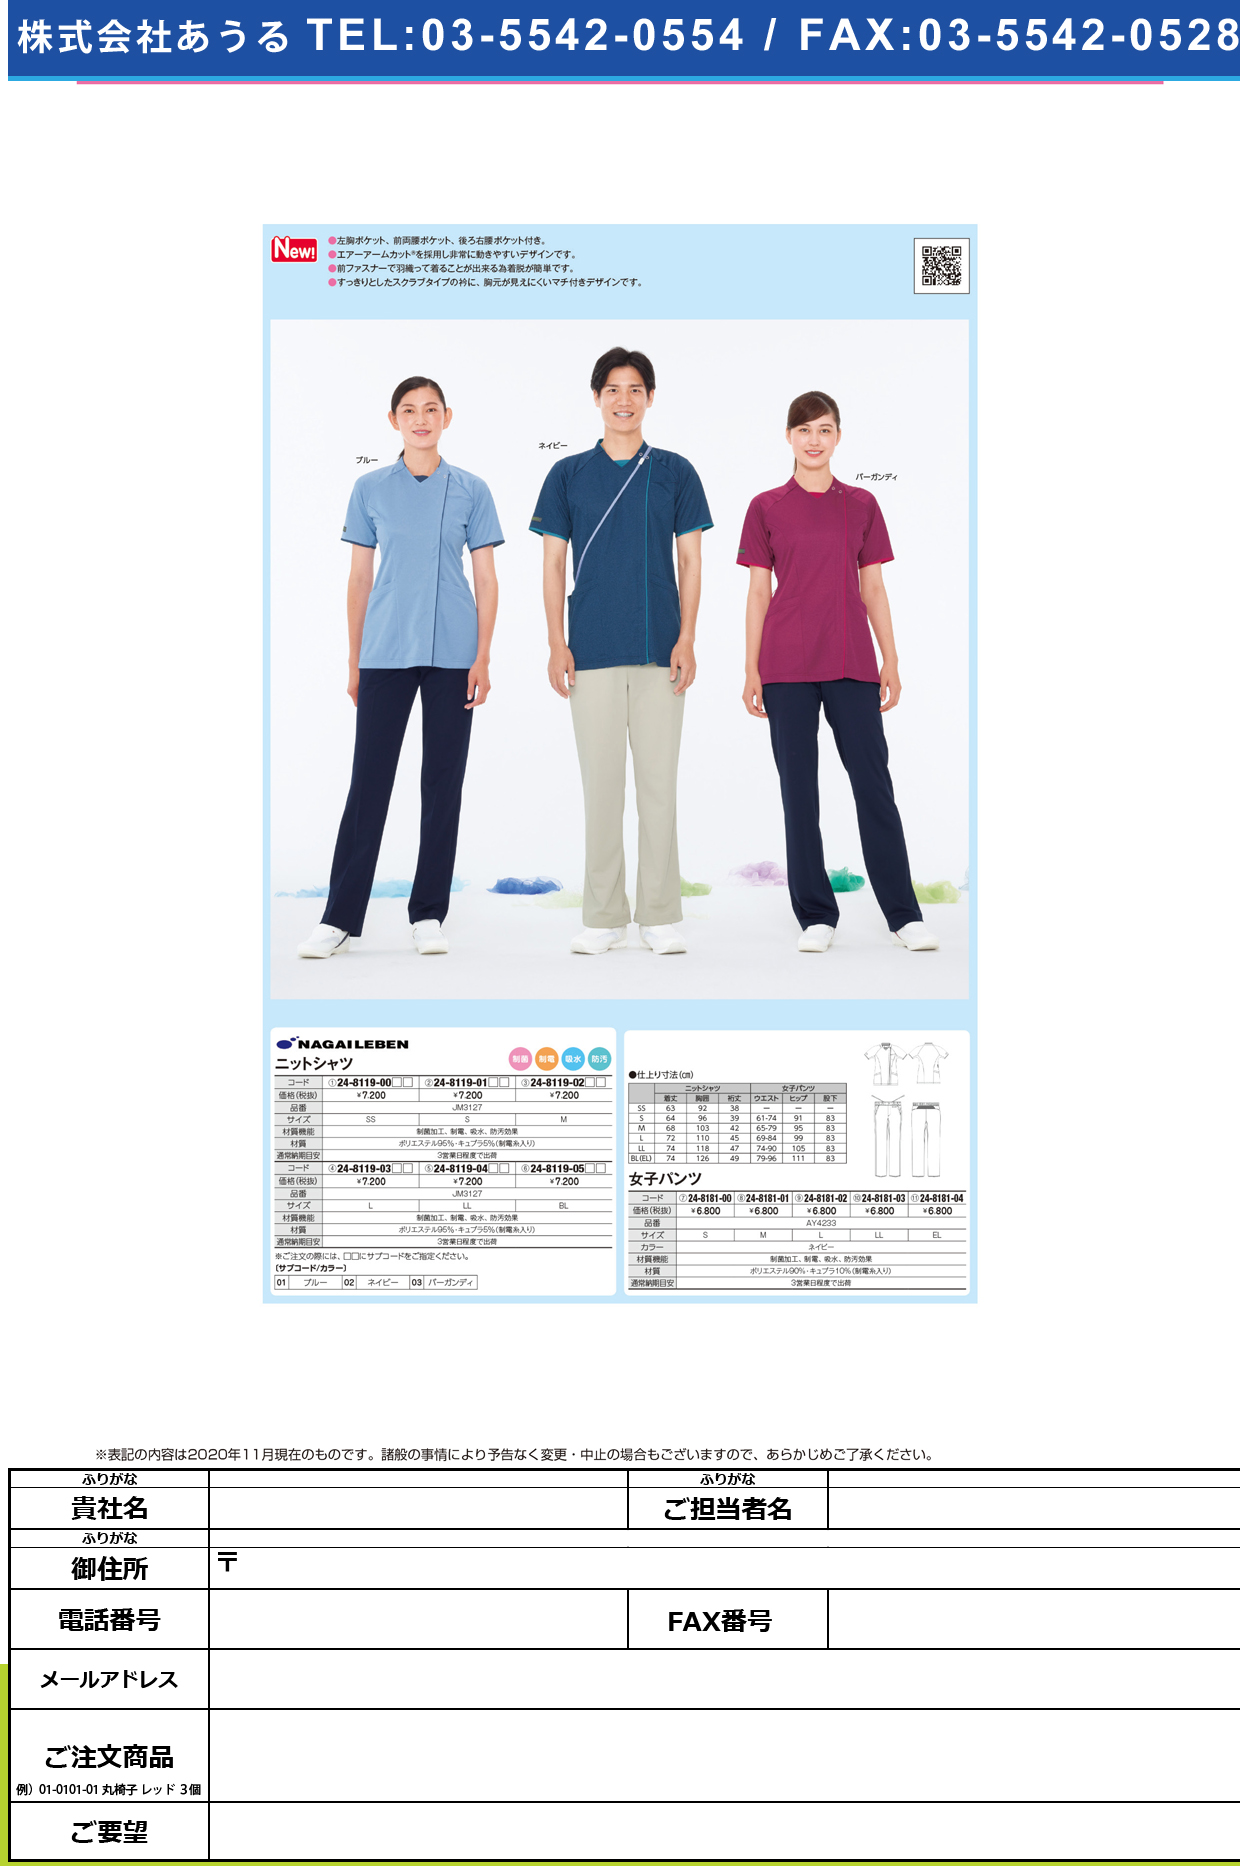 ニットシャツ JM-3127(SS)JM-3127(SS)ブルー(24-8119-00-01)【ナガイレーベン】(販売単位:1)